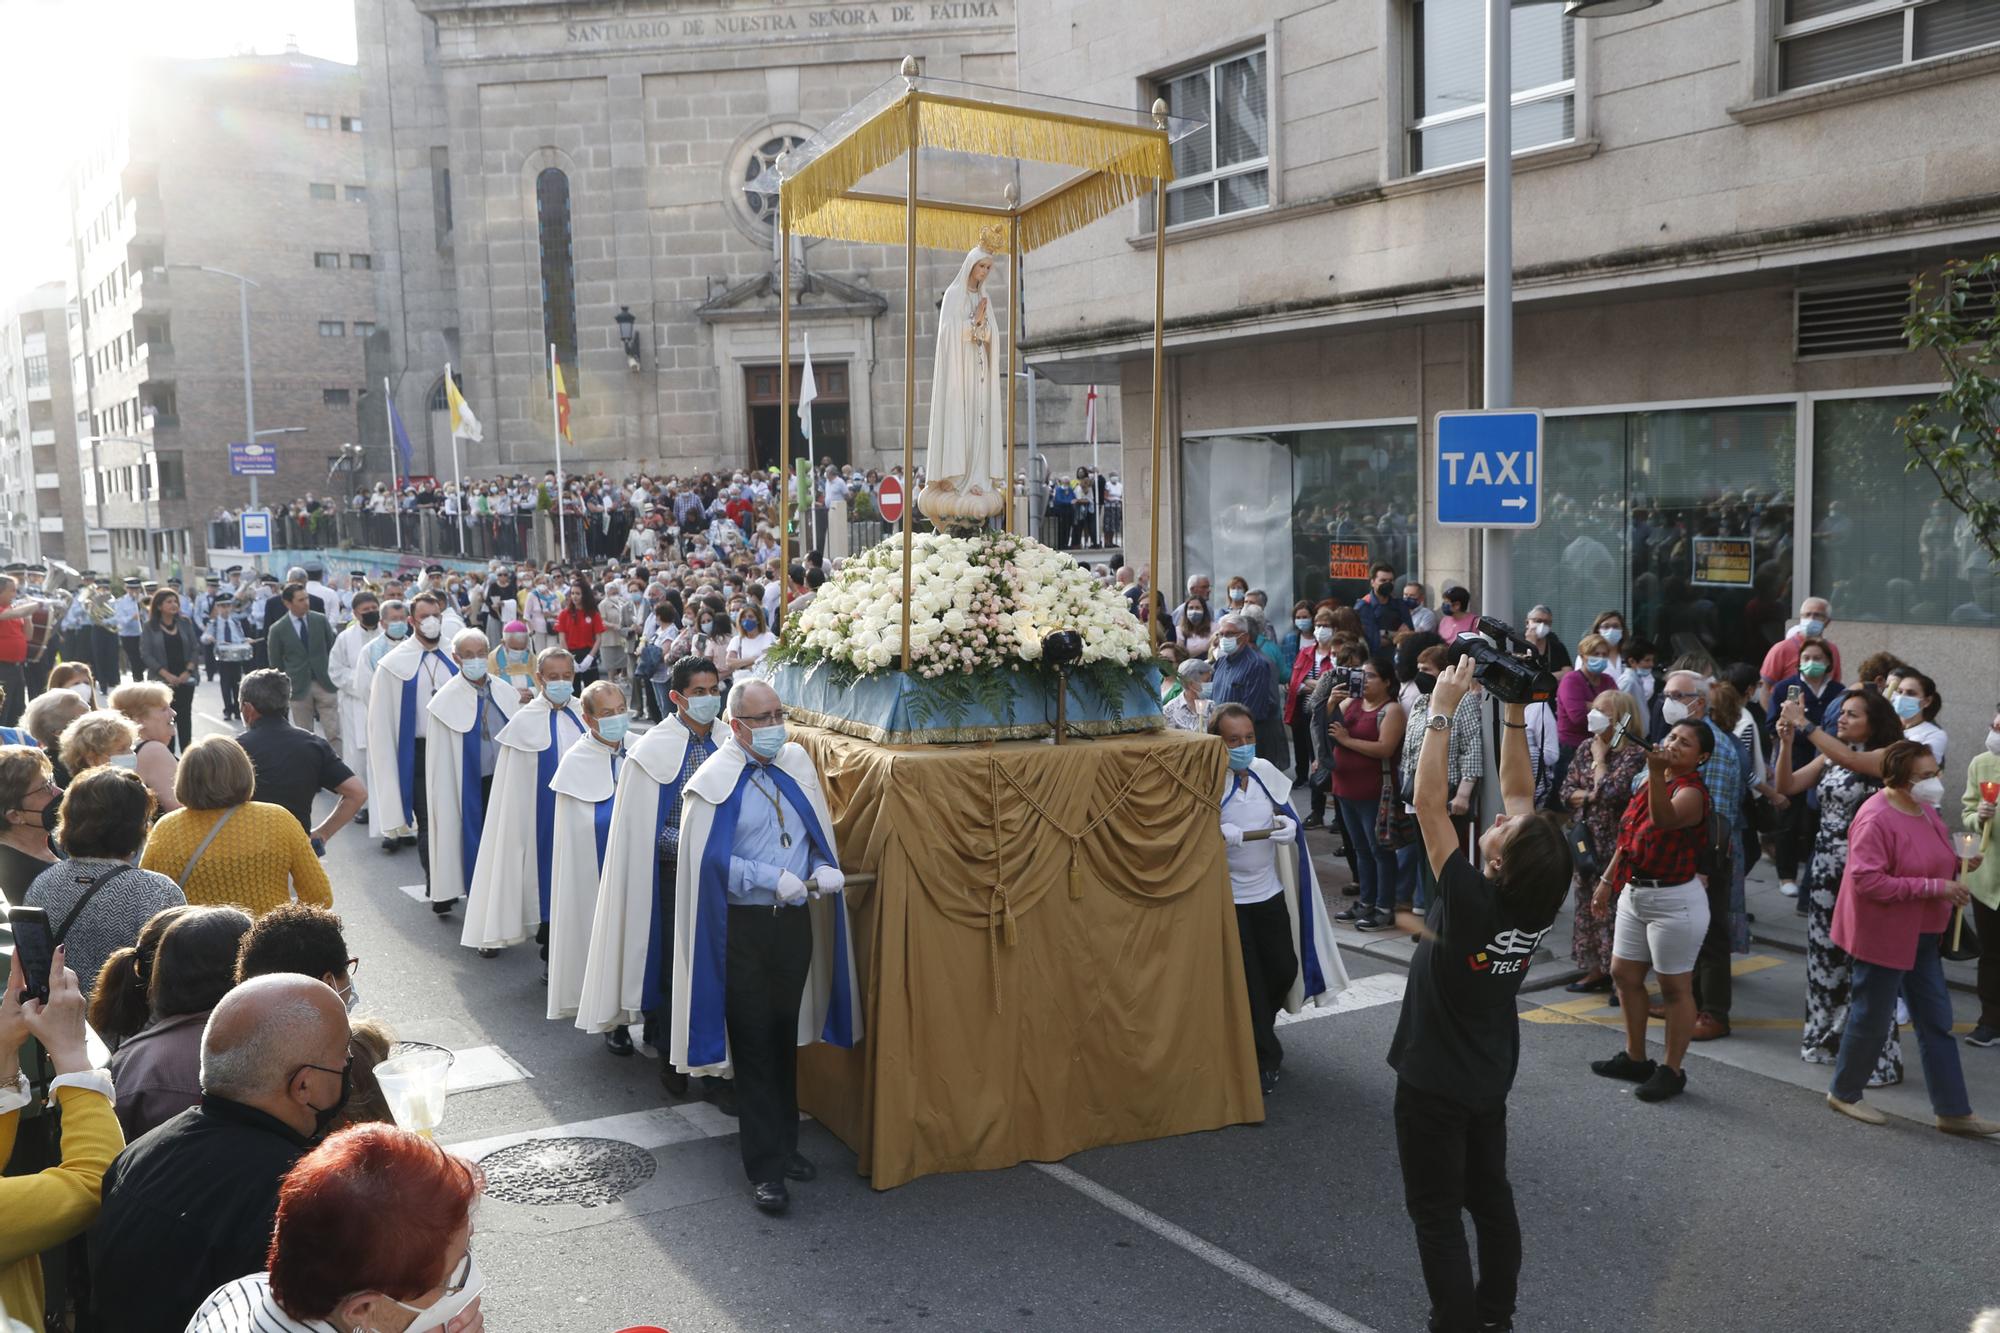 Los fieles vuelven a arropar a la Virgen de Fátima